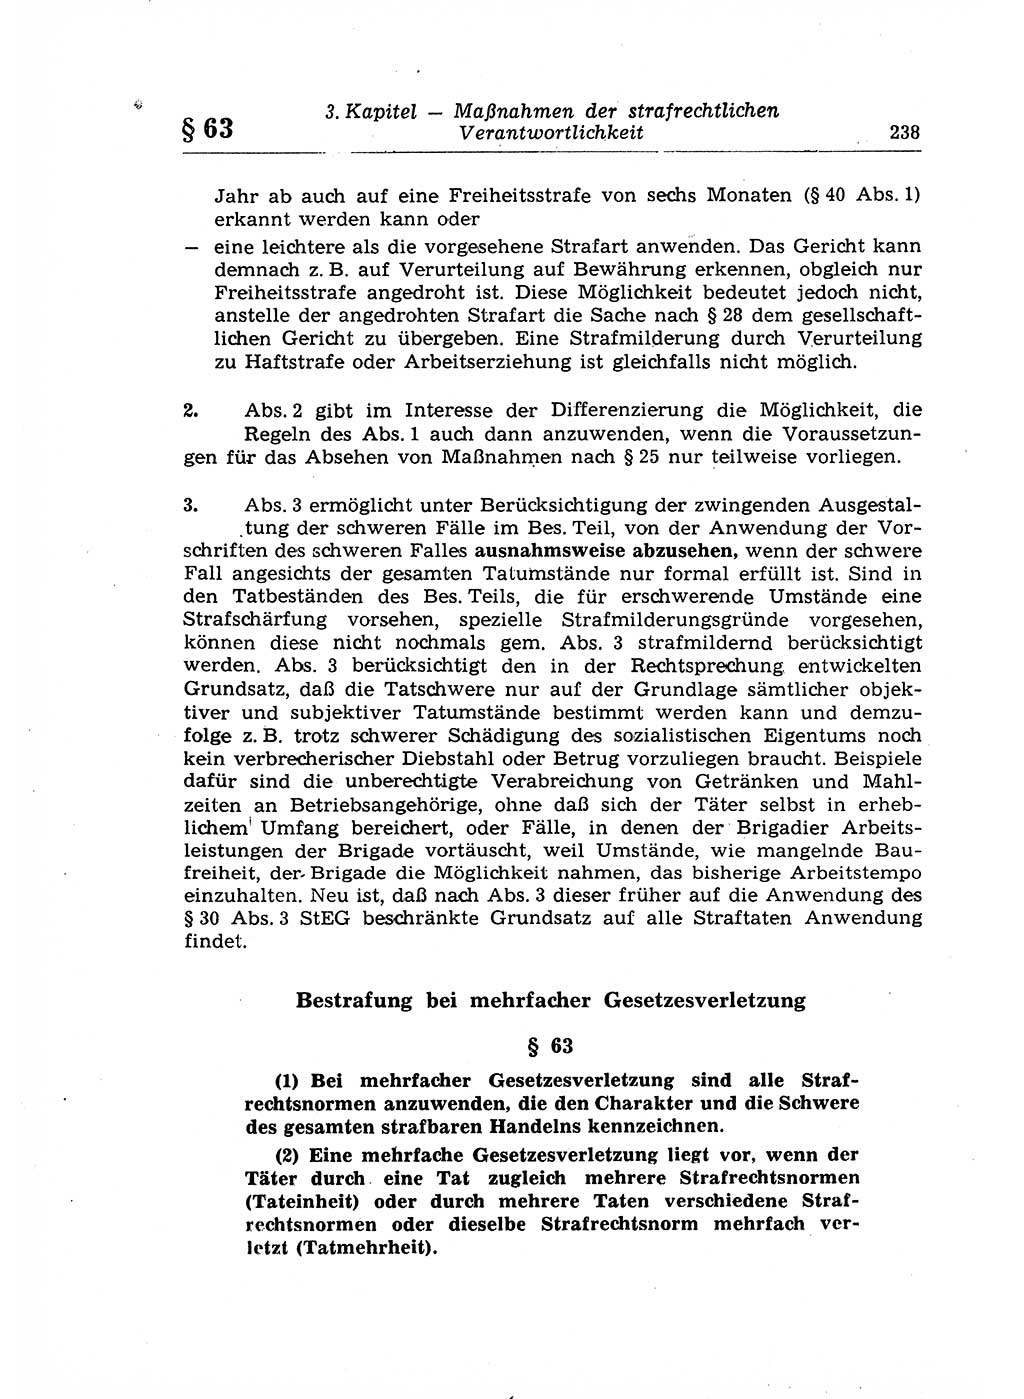 Strafrecht der Deutschen Demokratischen Republik (DDR), Lehrkommentar zum Strafgesetzbuch (StGB), Allgemeiner Teil 1969, Seite 238 (Strafr. DDR Lehrkomm. StGB AT 1969, S. 238)